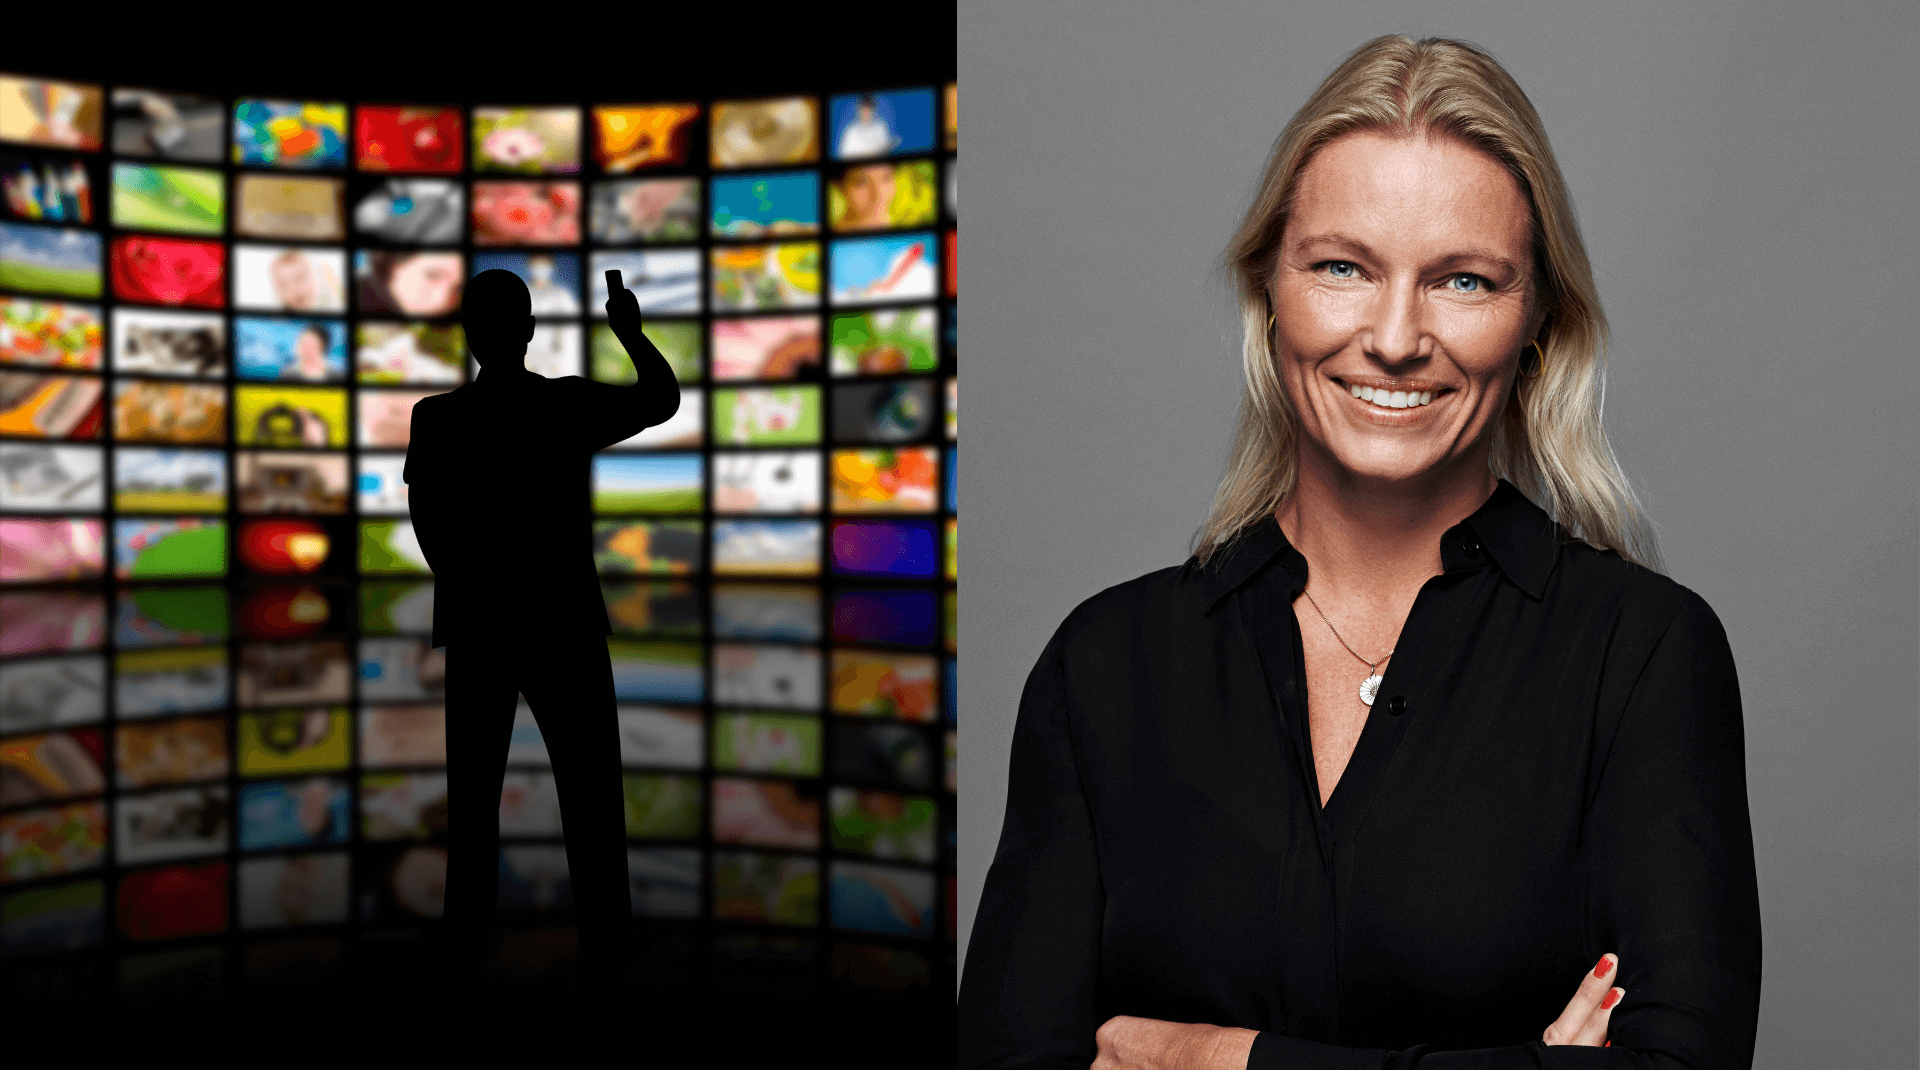 Applaus - TV 2 vil nå flest mulige danskere med størst mulig væsentlighed